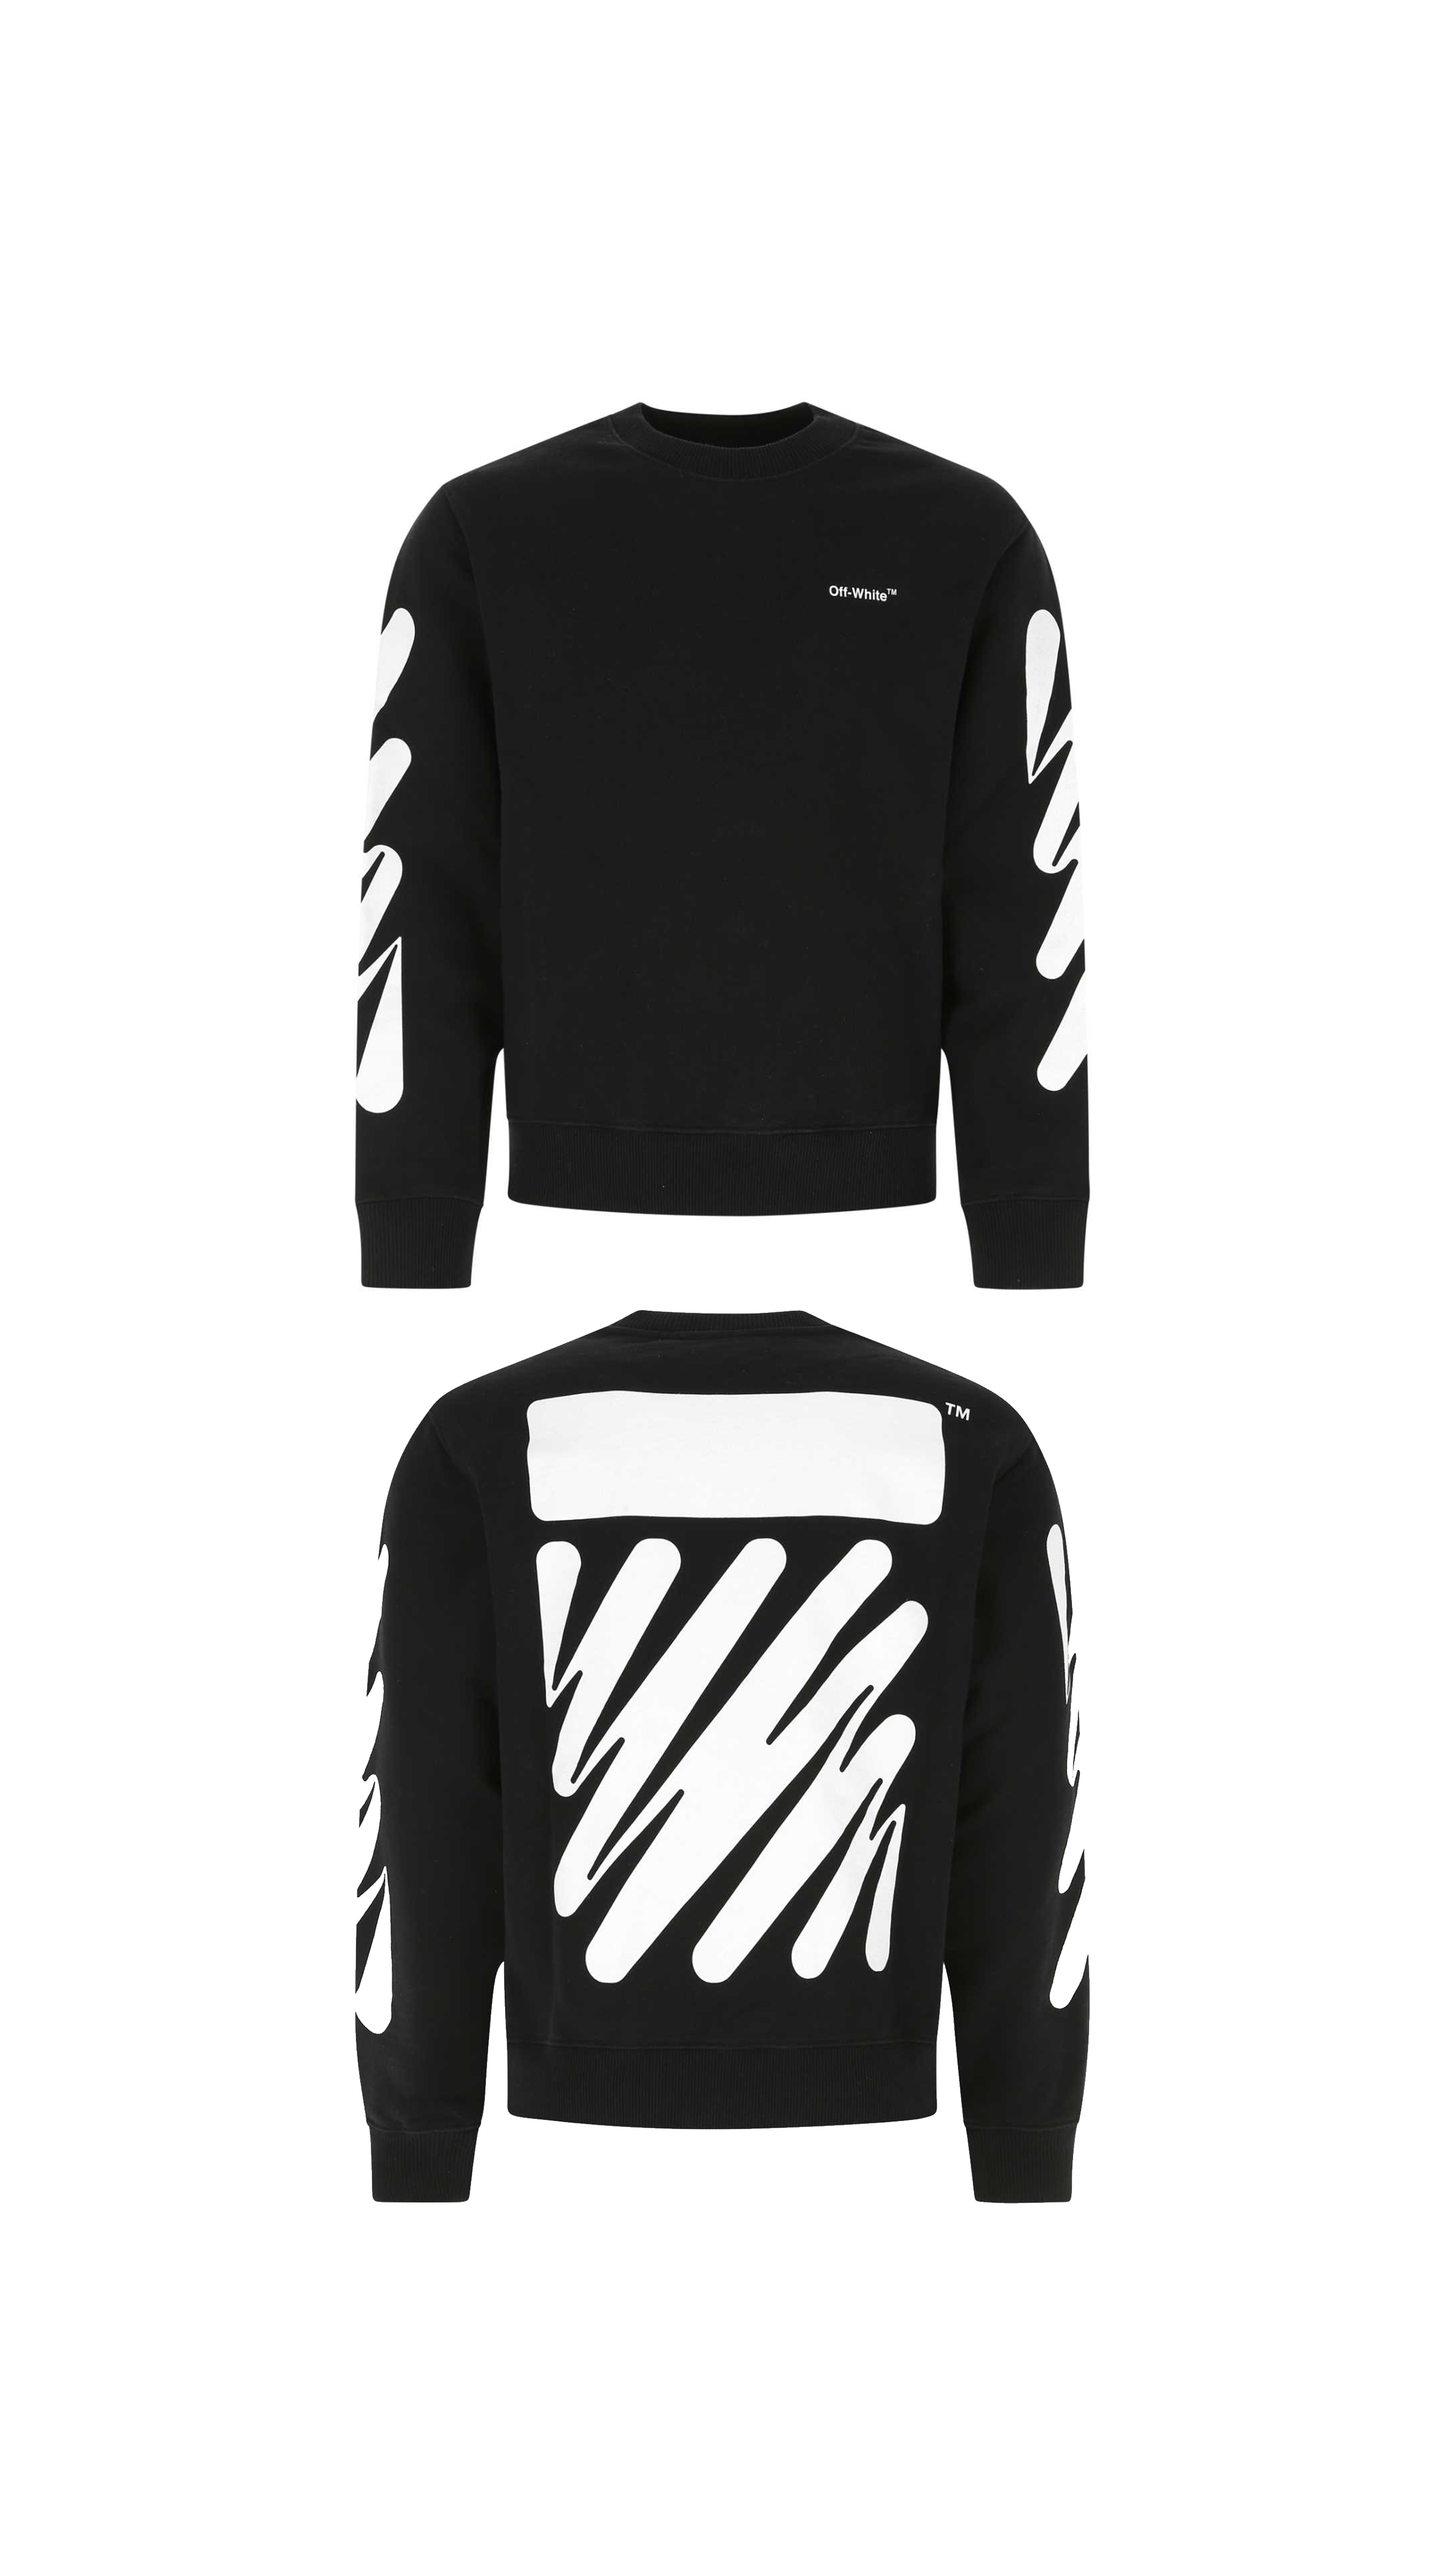 Marker Arrows Sweatshirt - Black